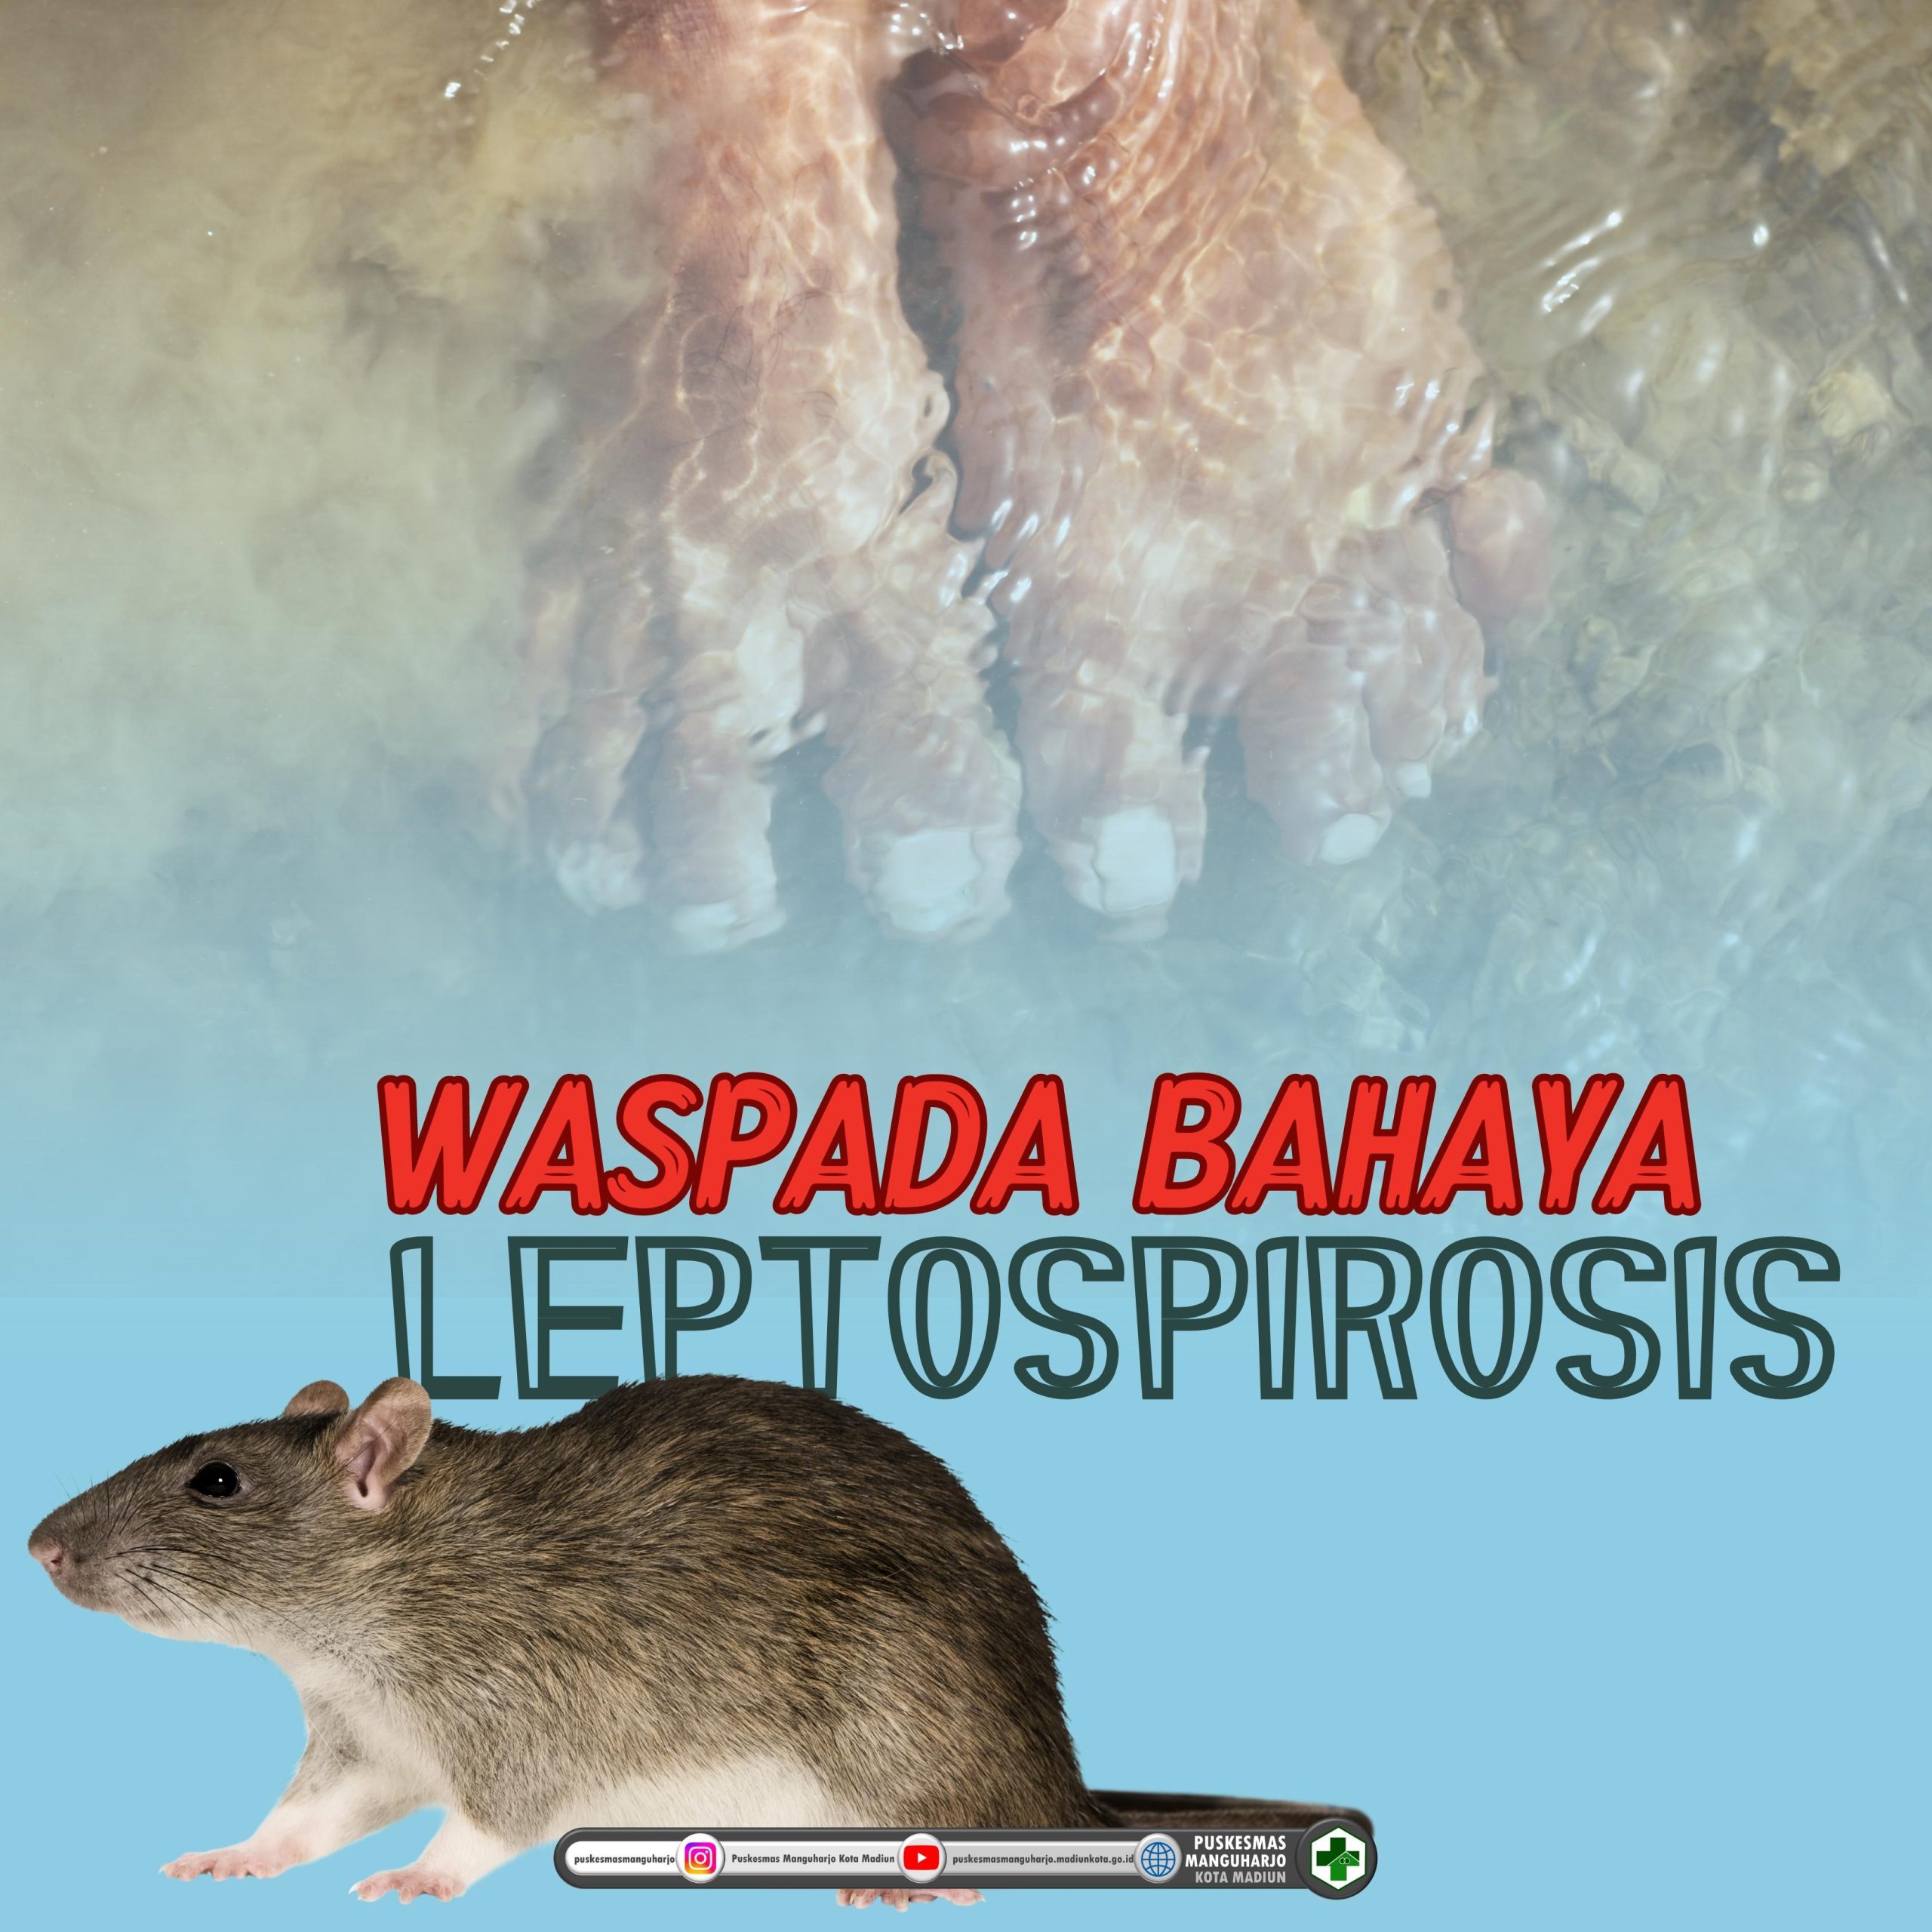 WASPADA BAHAYA LEPTOSPIROSIS